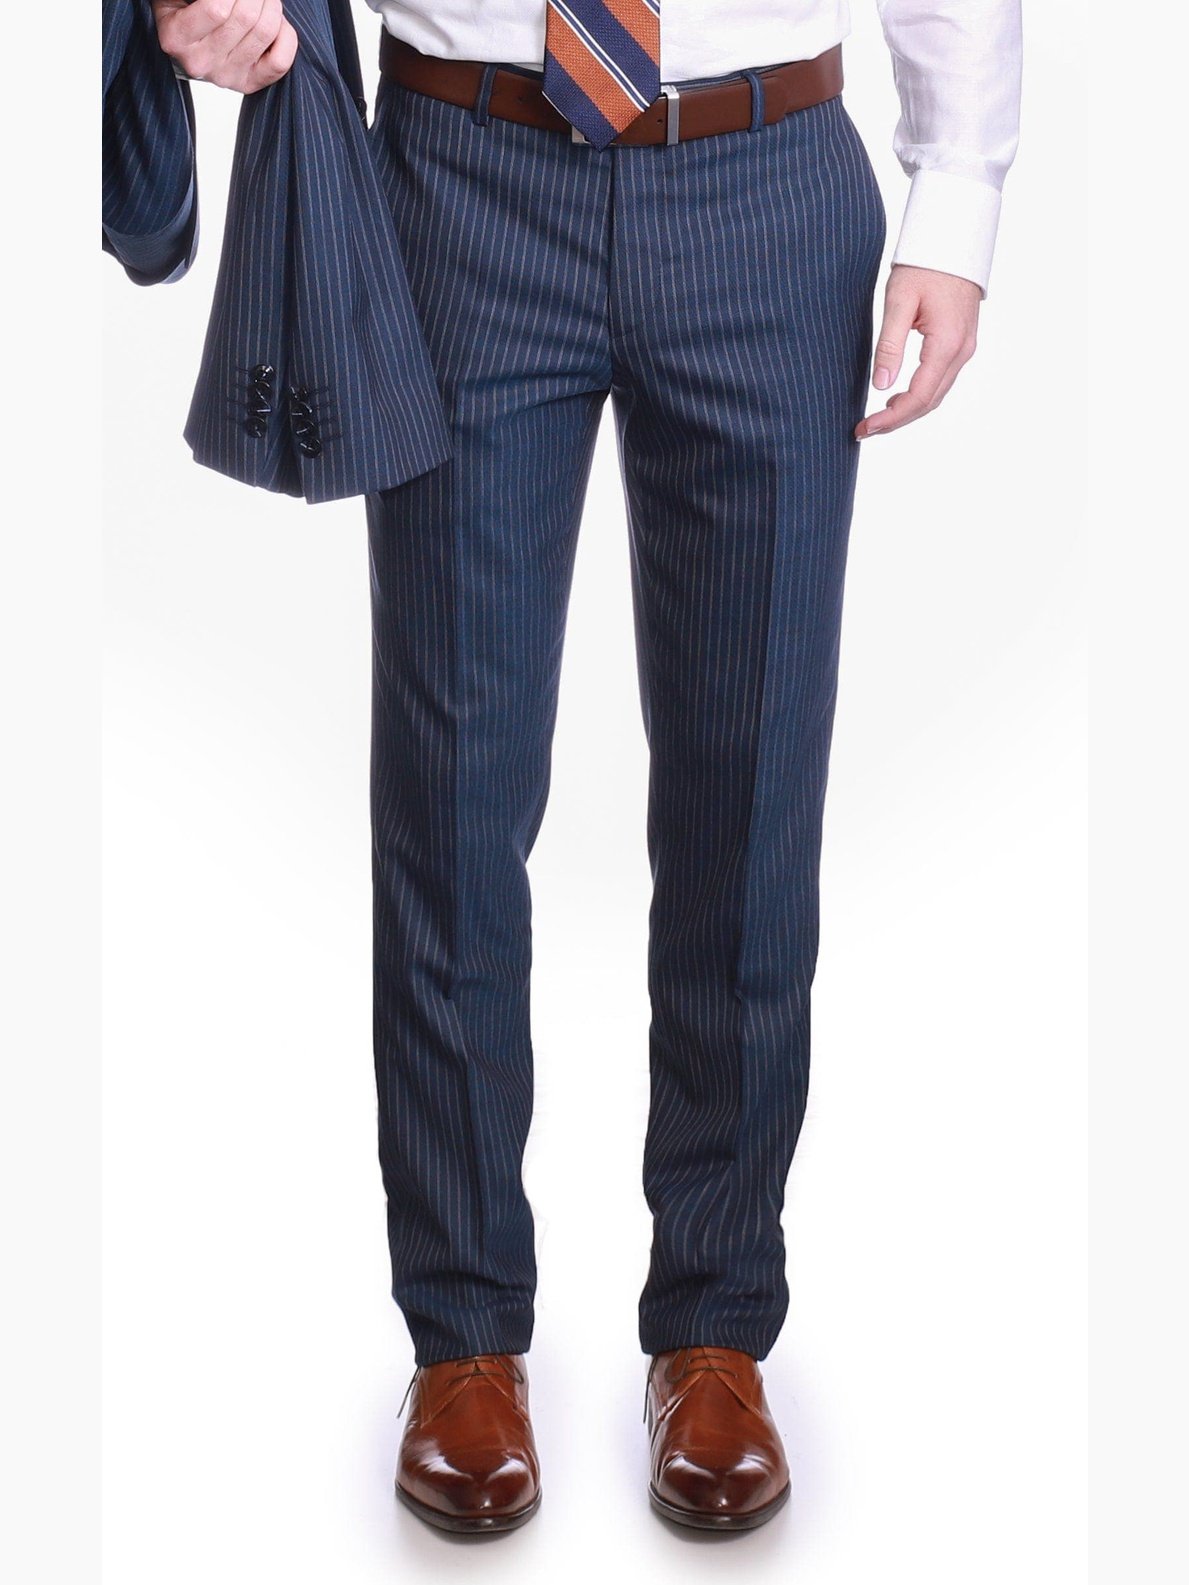 Carducci SUITS Carducci Mens Navy Blue Pinstripe Wool Blend Slim Fit Suit With Peak Lapels